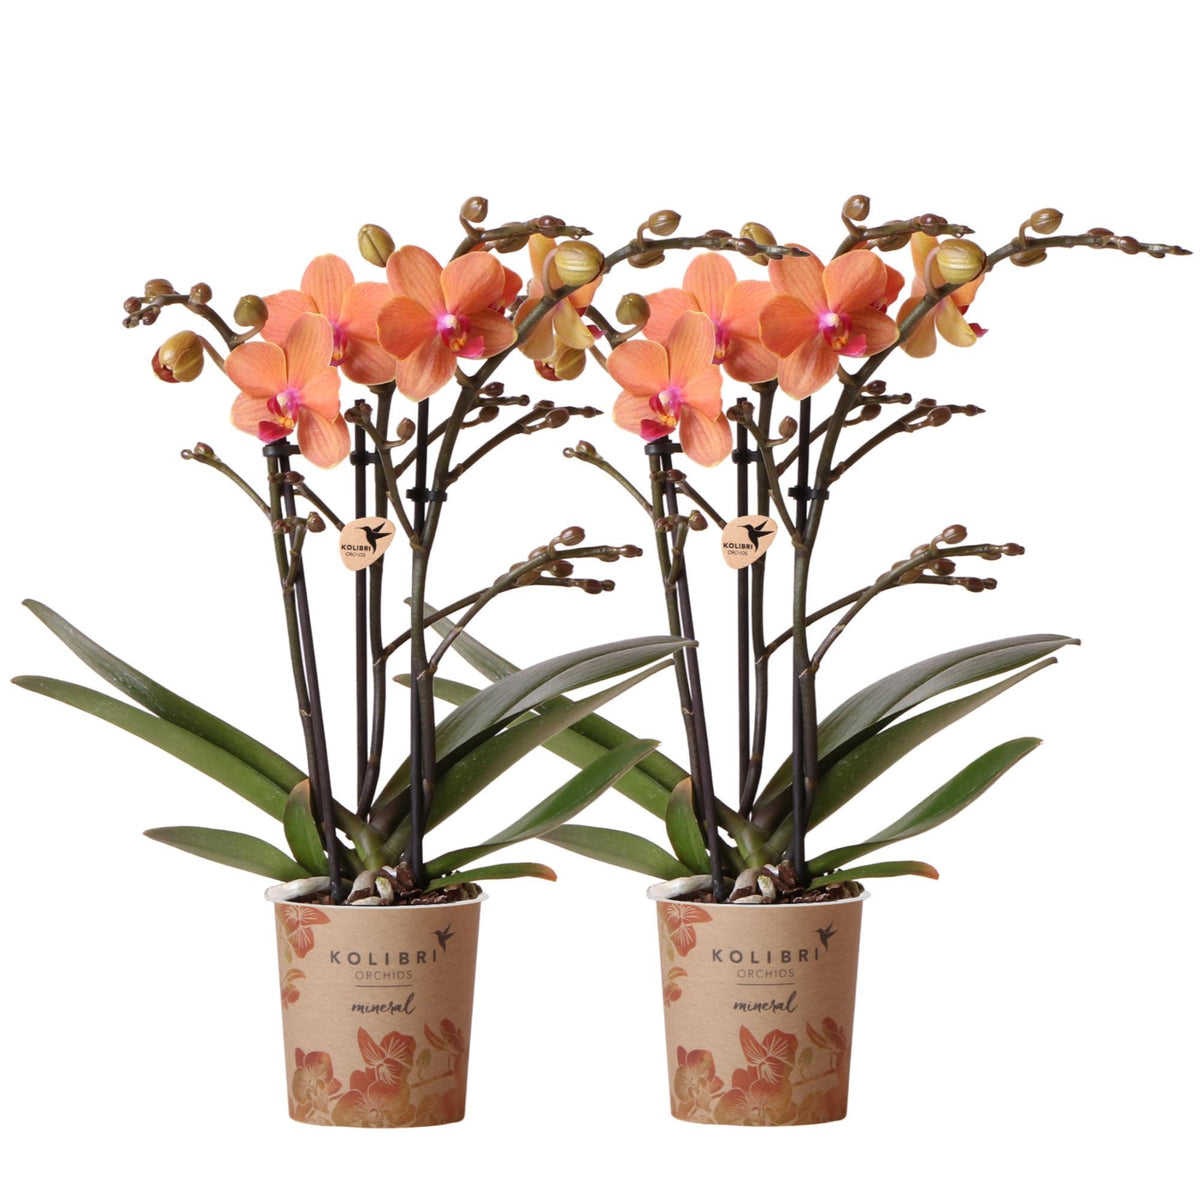 Twee oranje Phalaenopsis orchideeën in een Combi Deal, genaamd Bolzano. De orchideeën hebben een potmaat van Ø9cm en zijn bloeiende kamerplanten. Vers van de kweker.